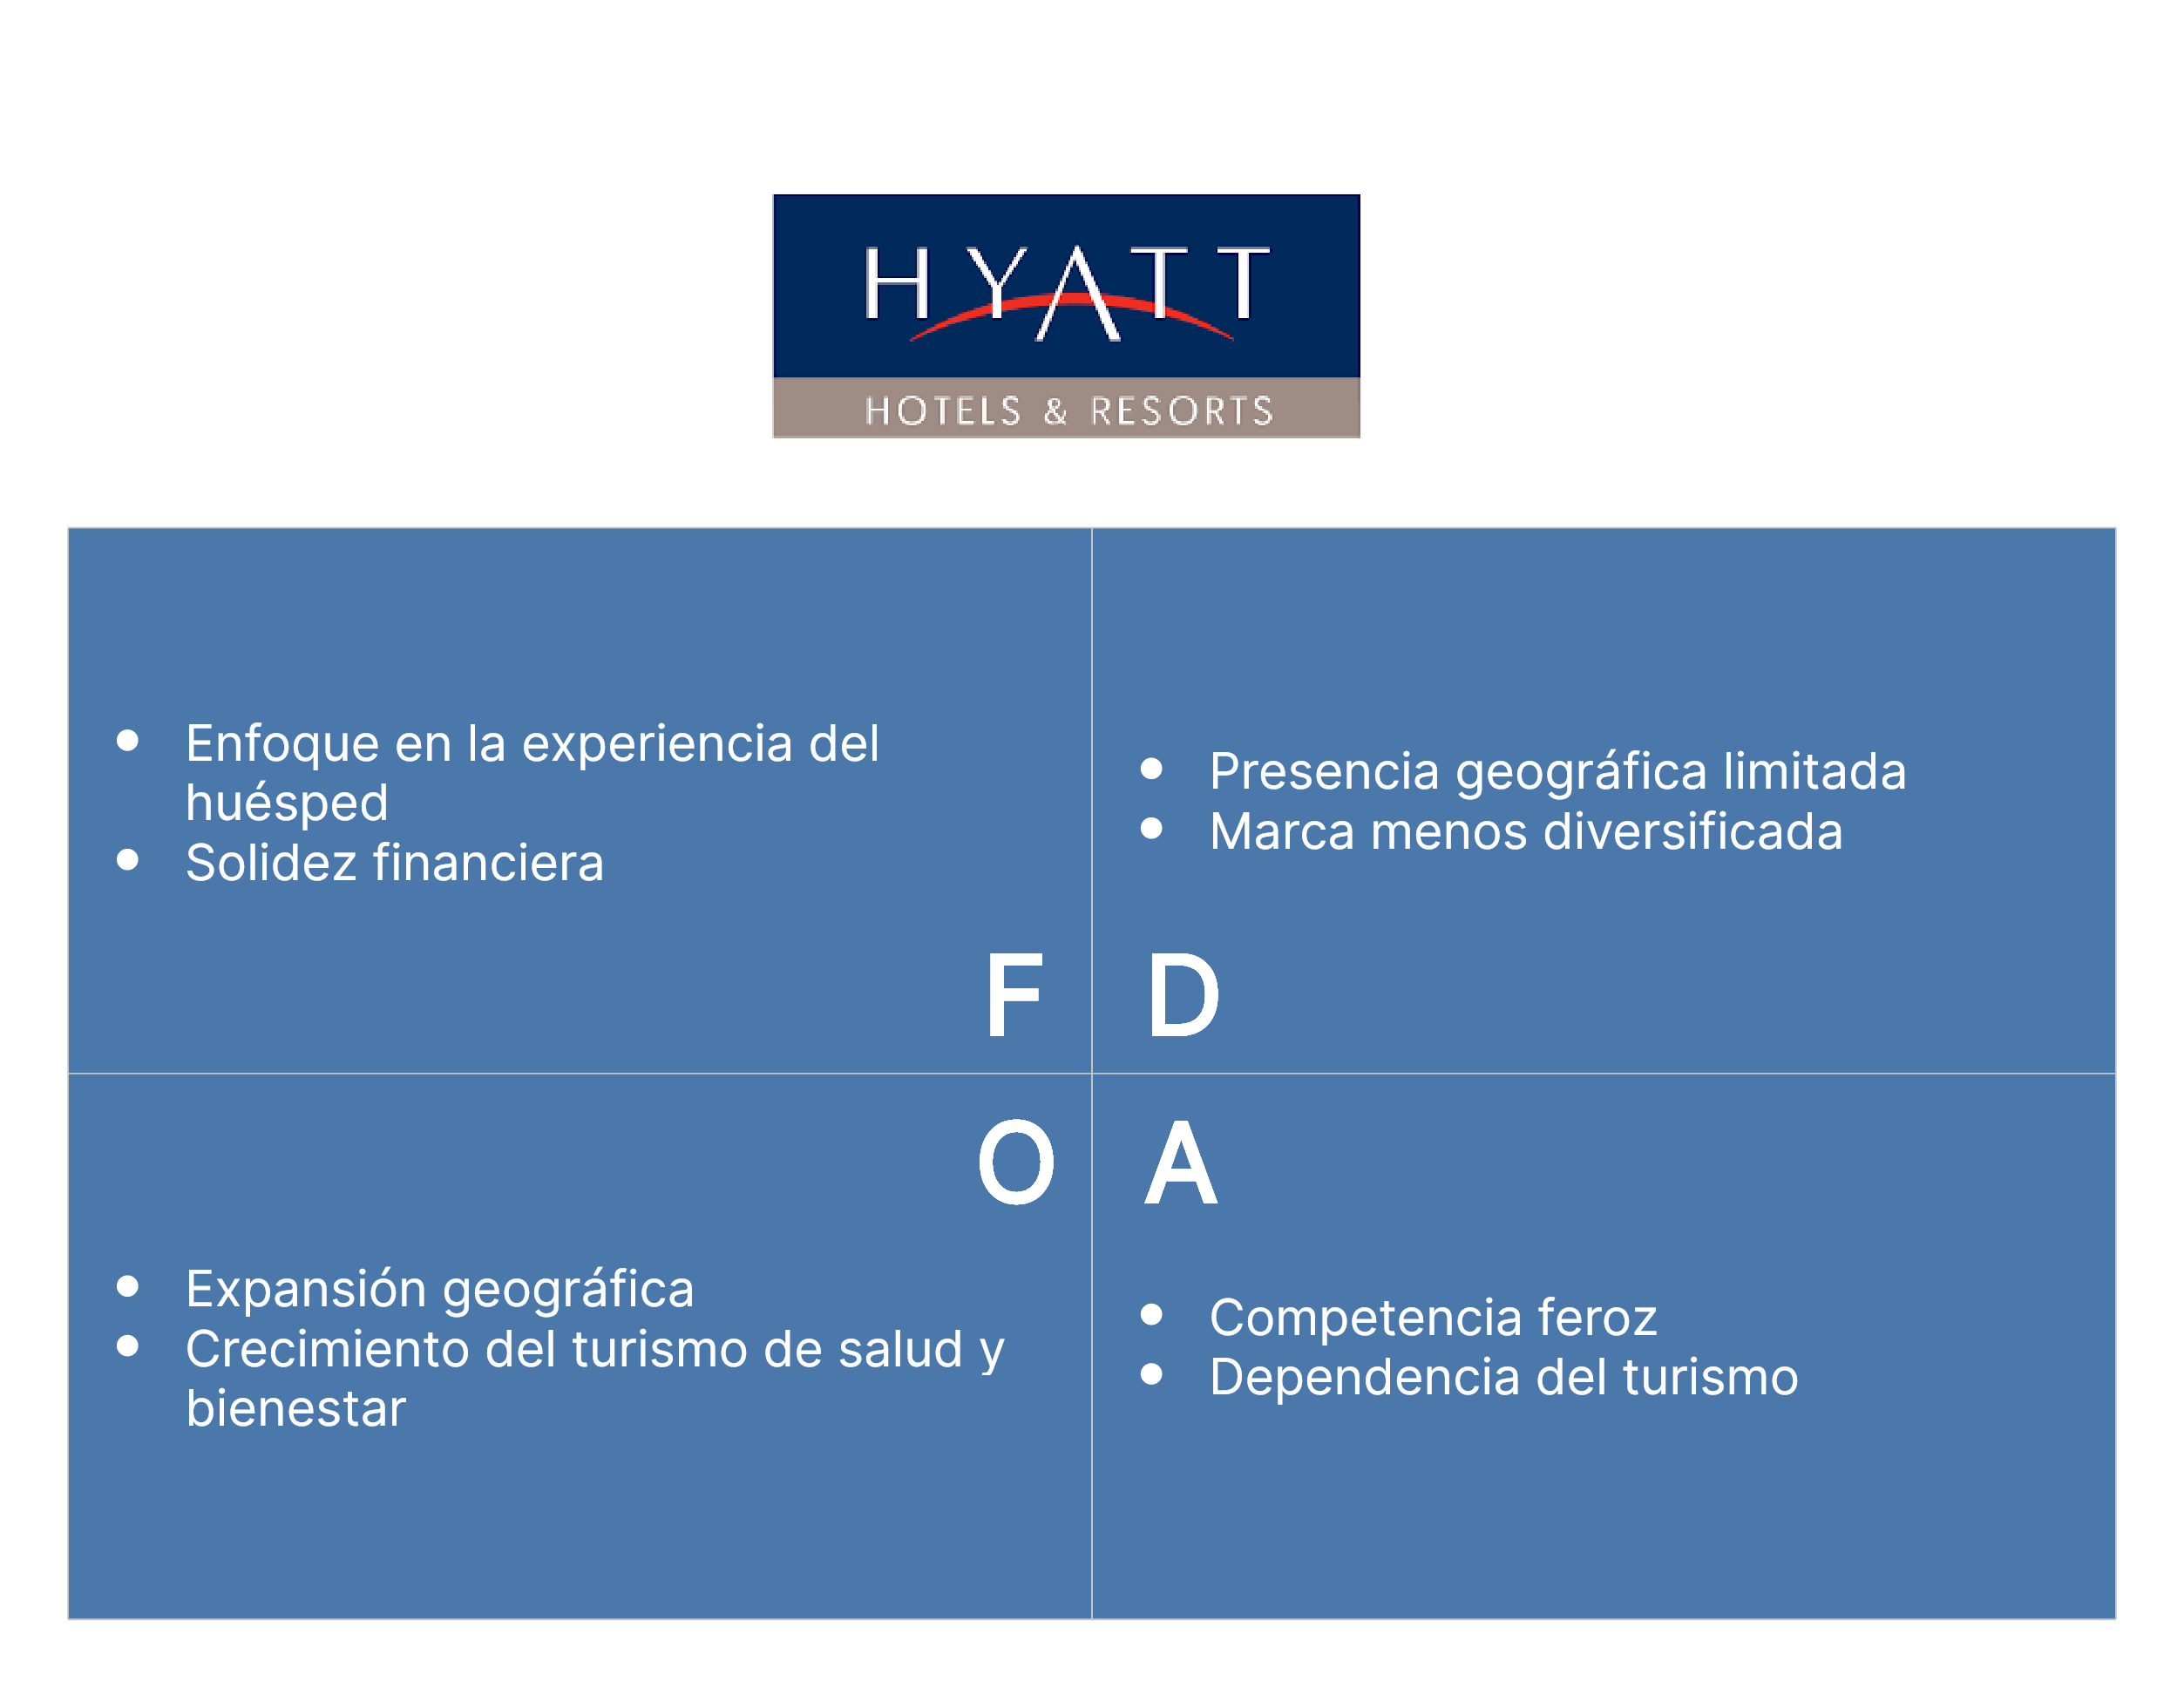 Análisis FODA del Hotel Hyatt